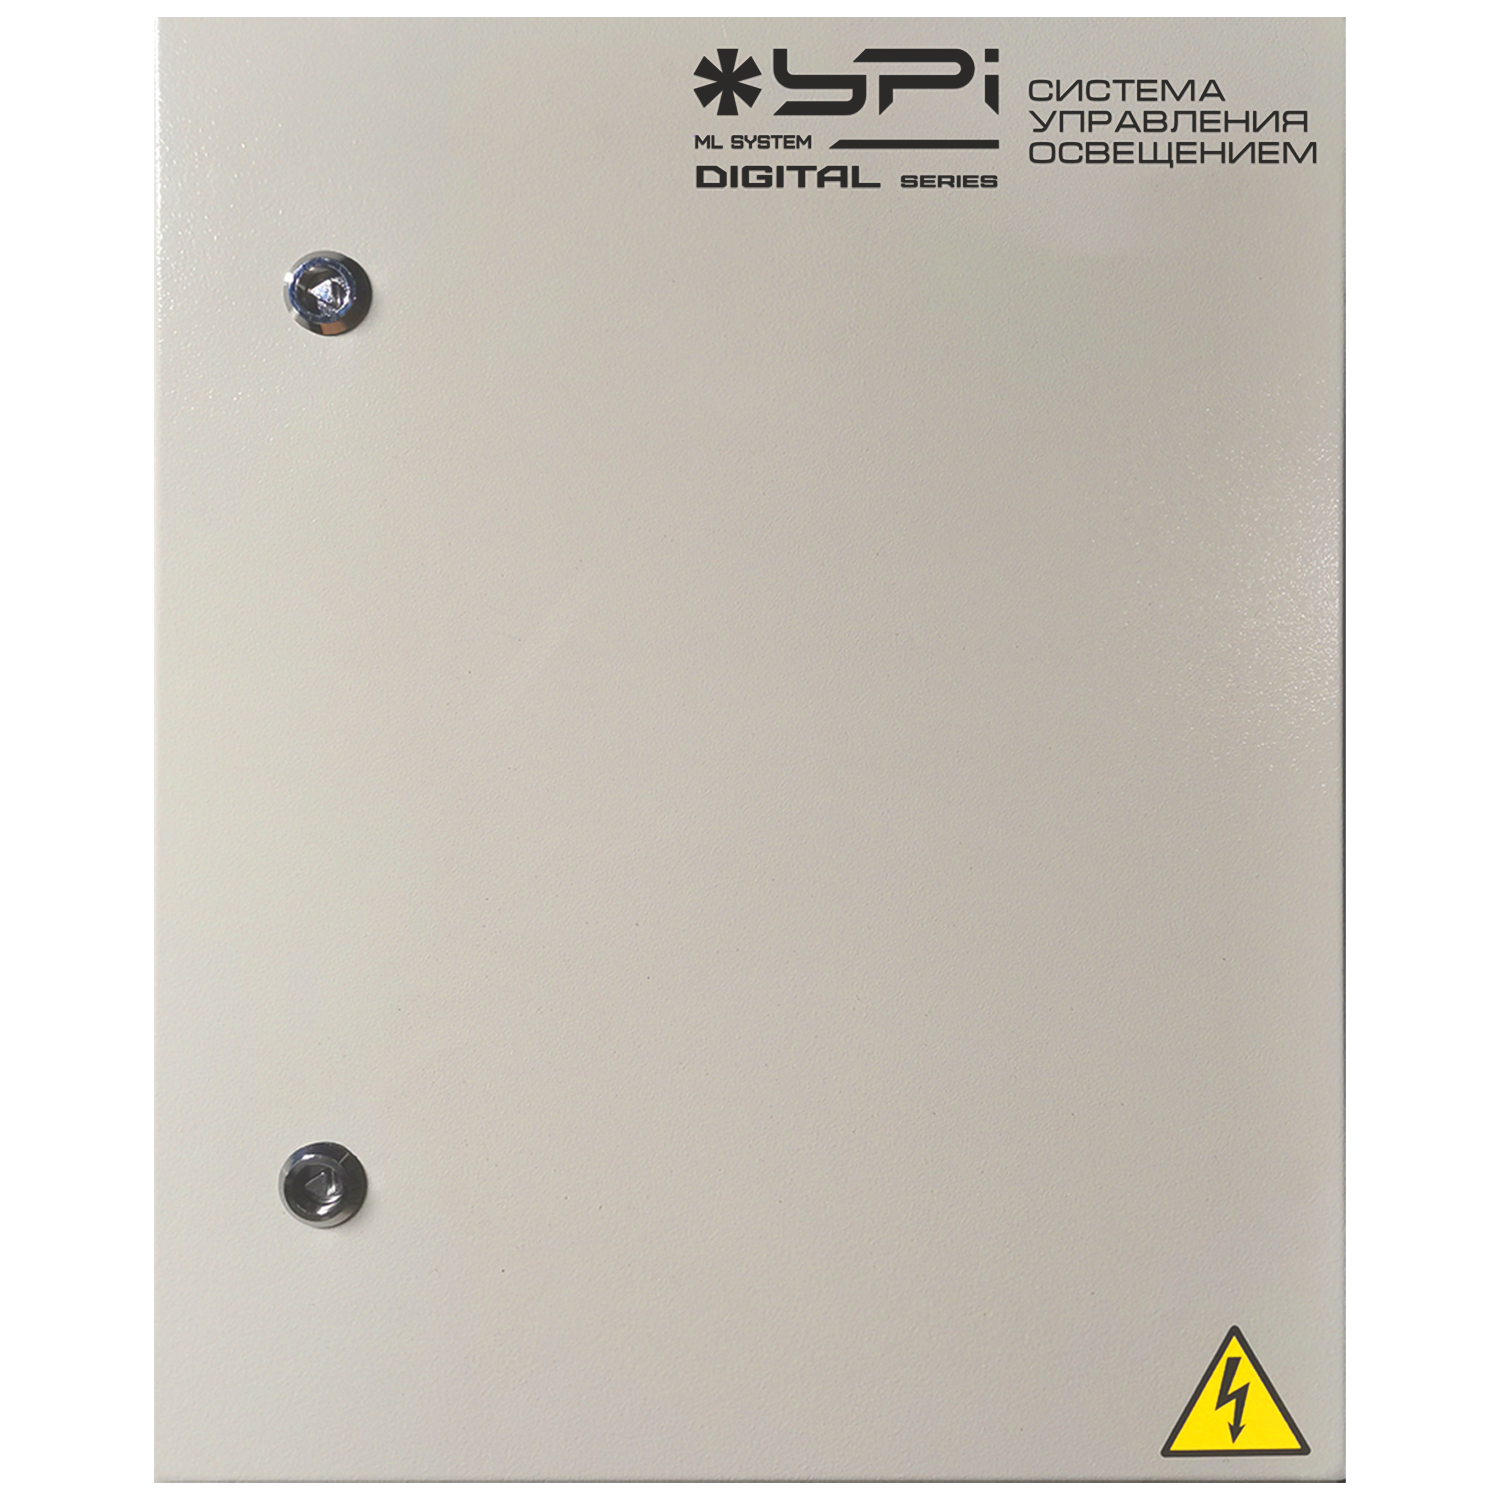 YPI Manage Light System series Digital